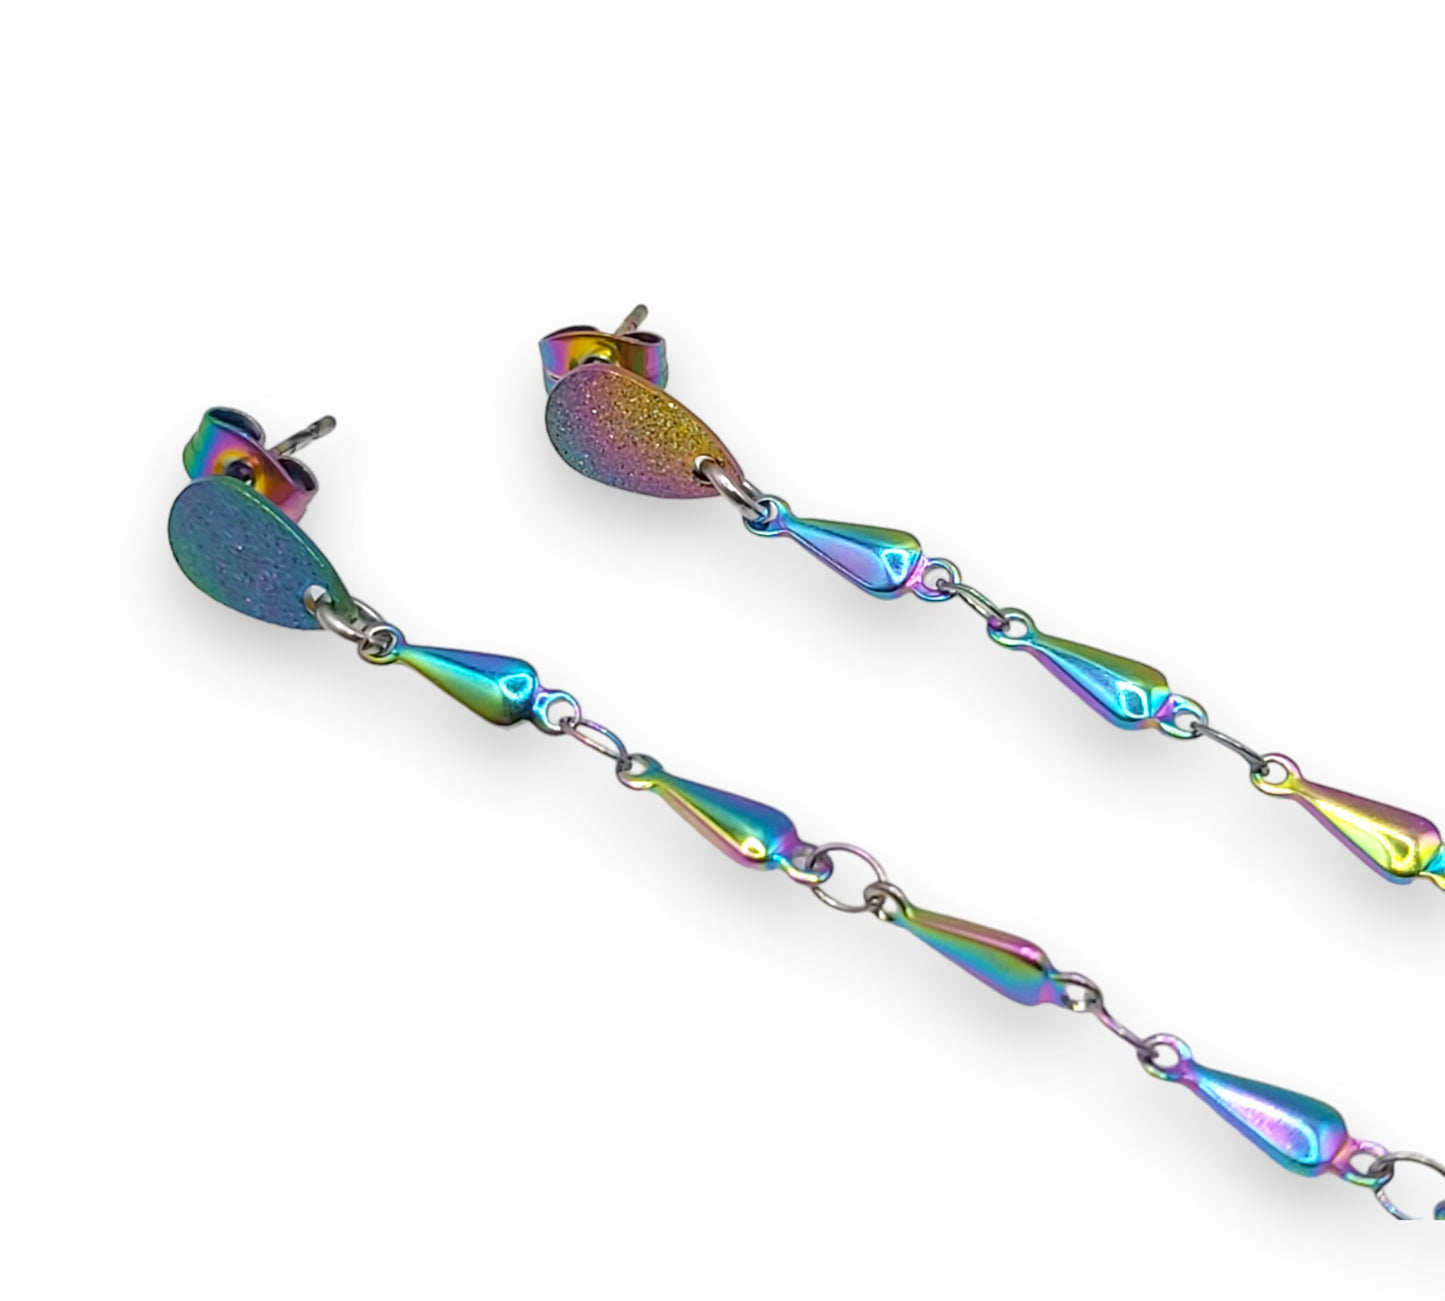 EarLinks con cadena Raindrop - Auriculares inalámbricos